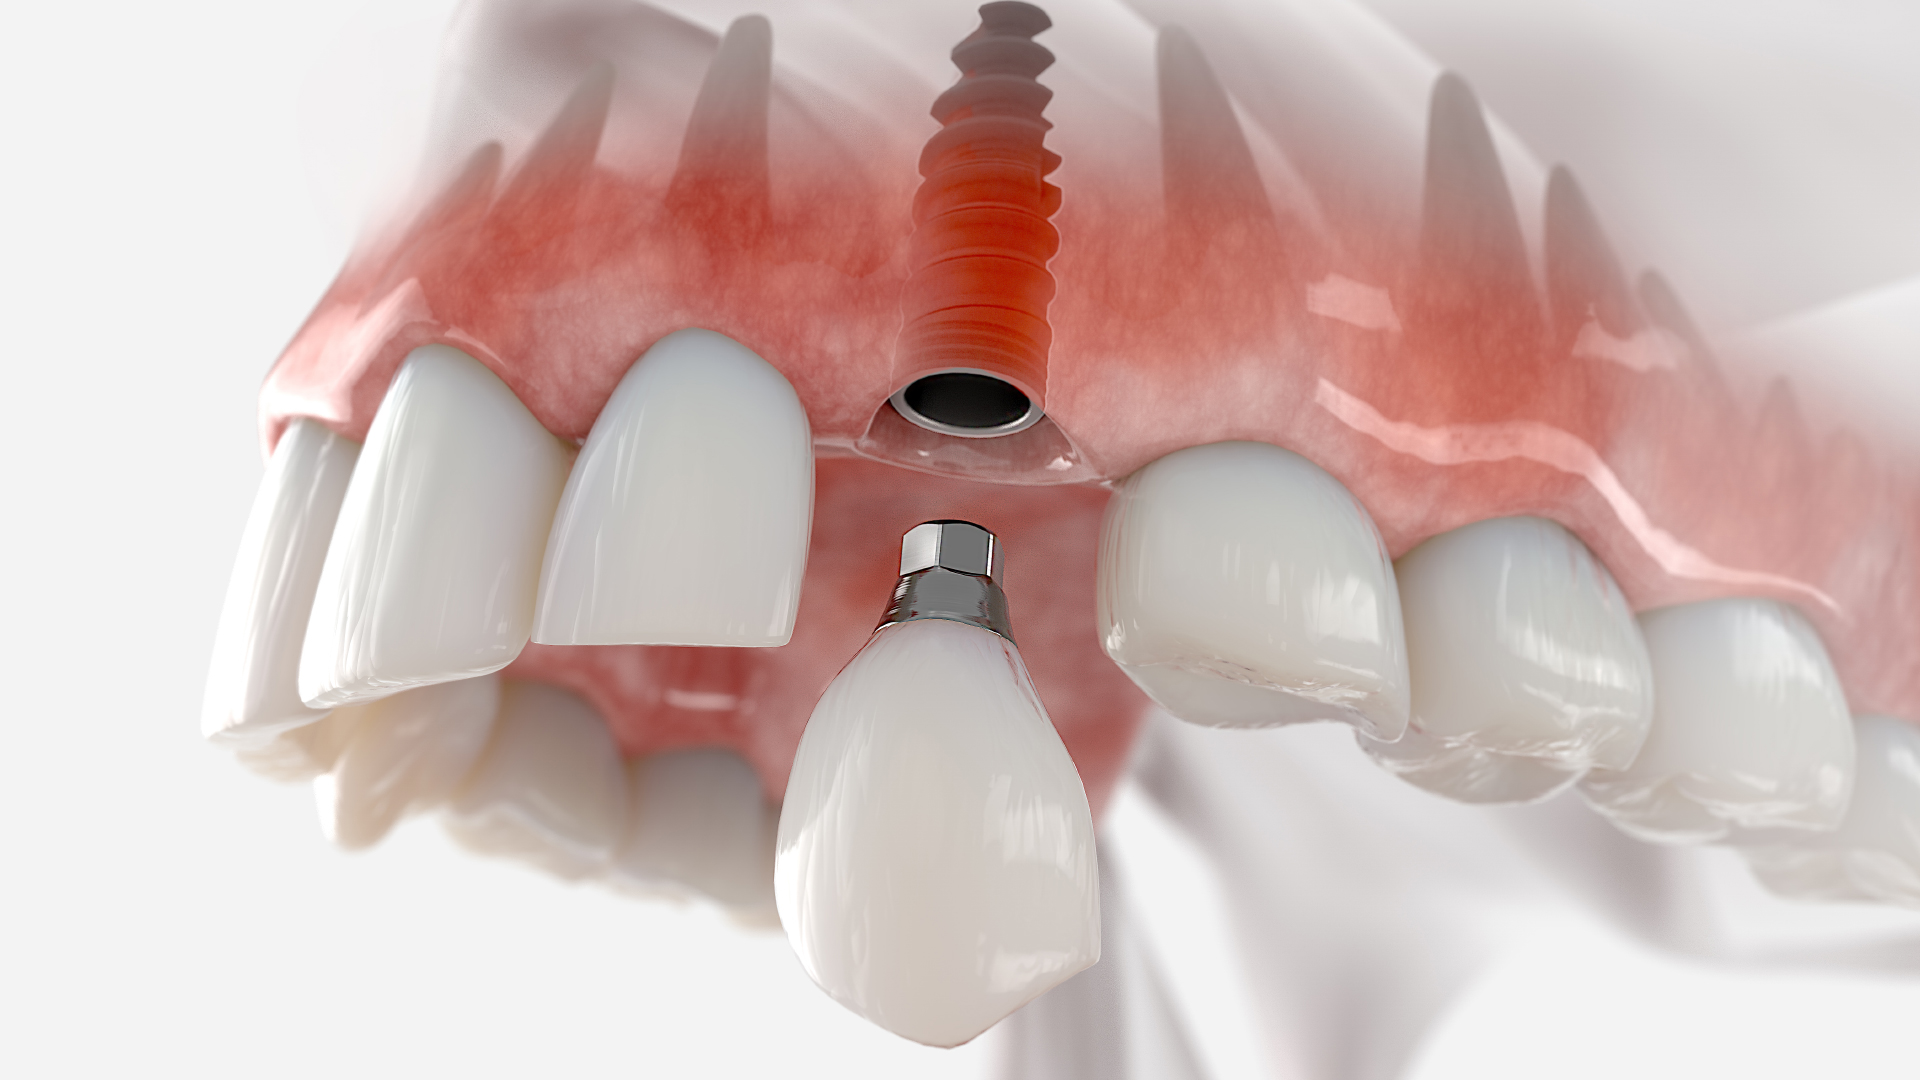 une couronne dentaire vissée sur implant